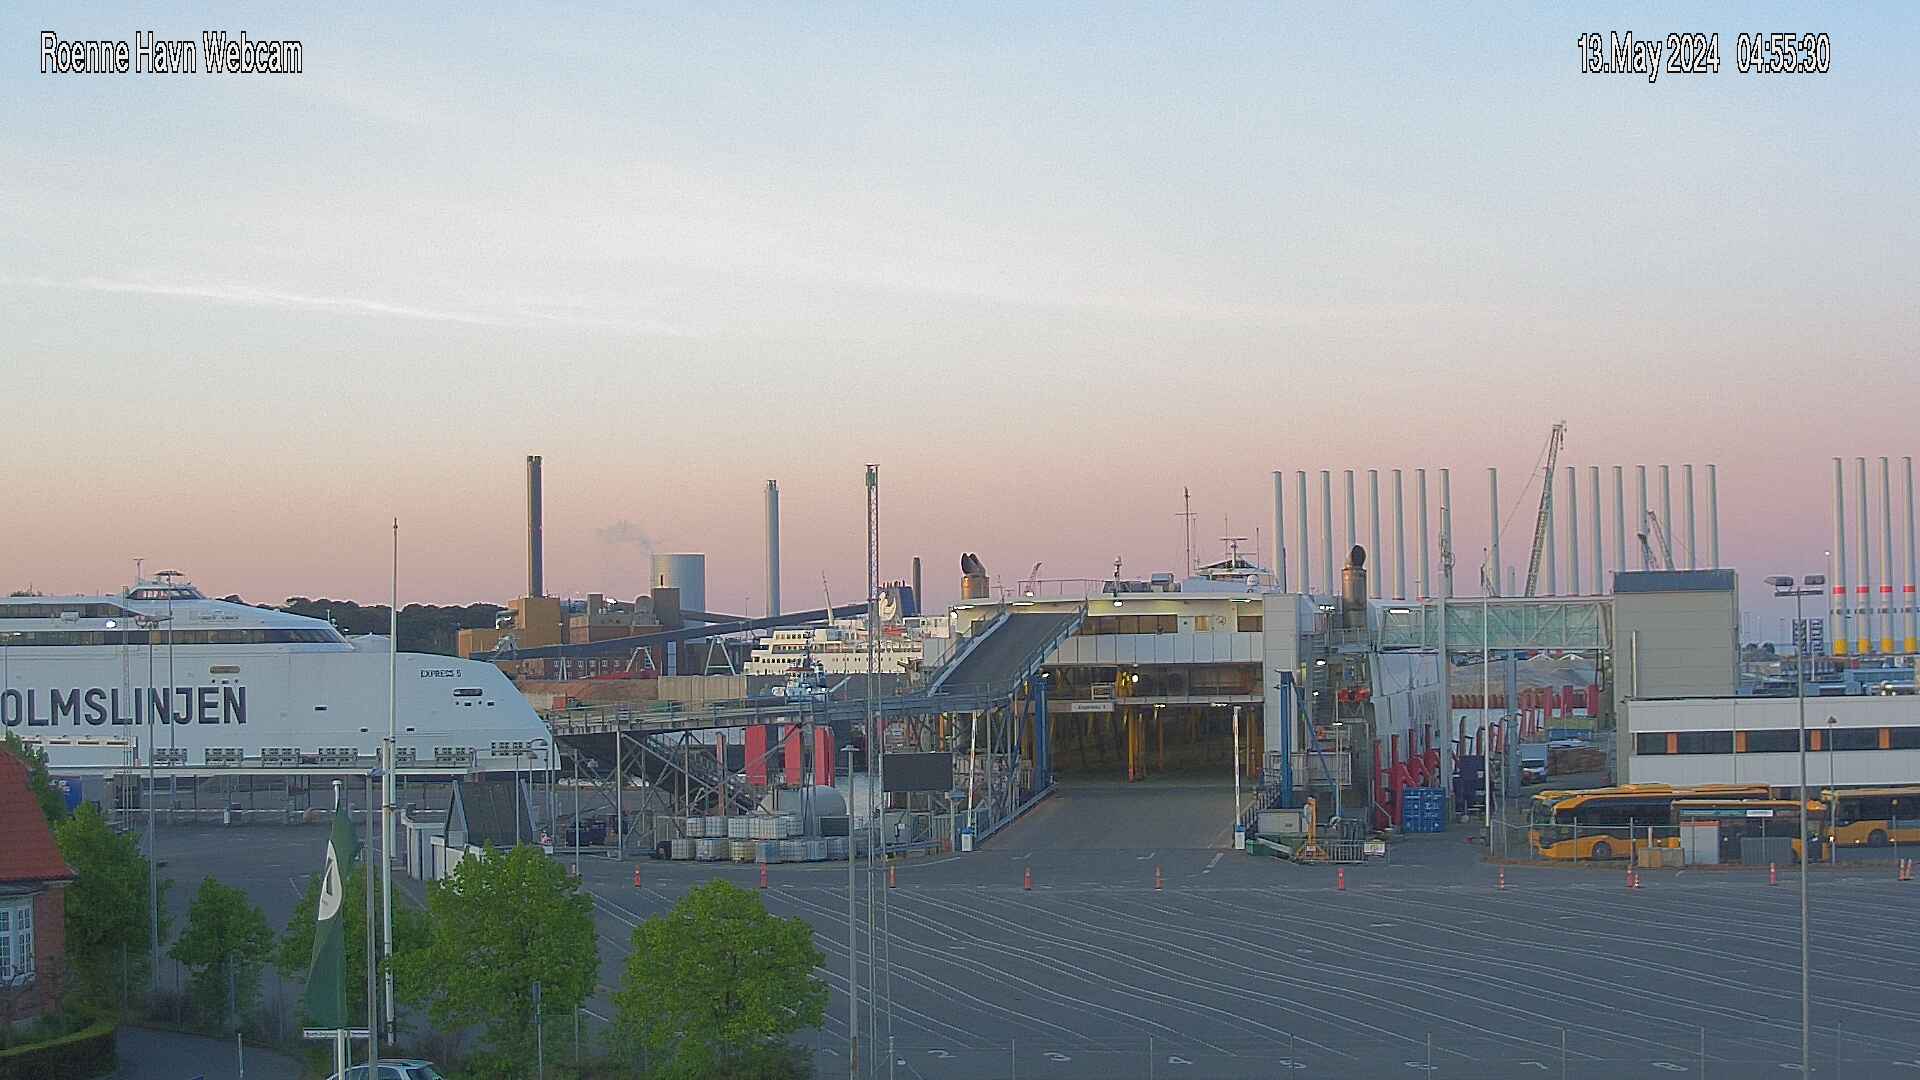 Rønne (Bornholm) Ven. 04:55